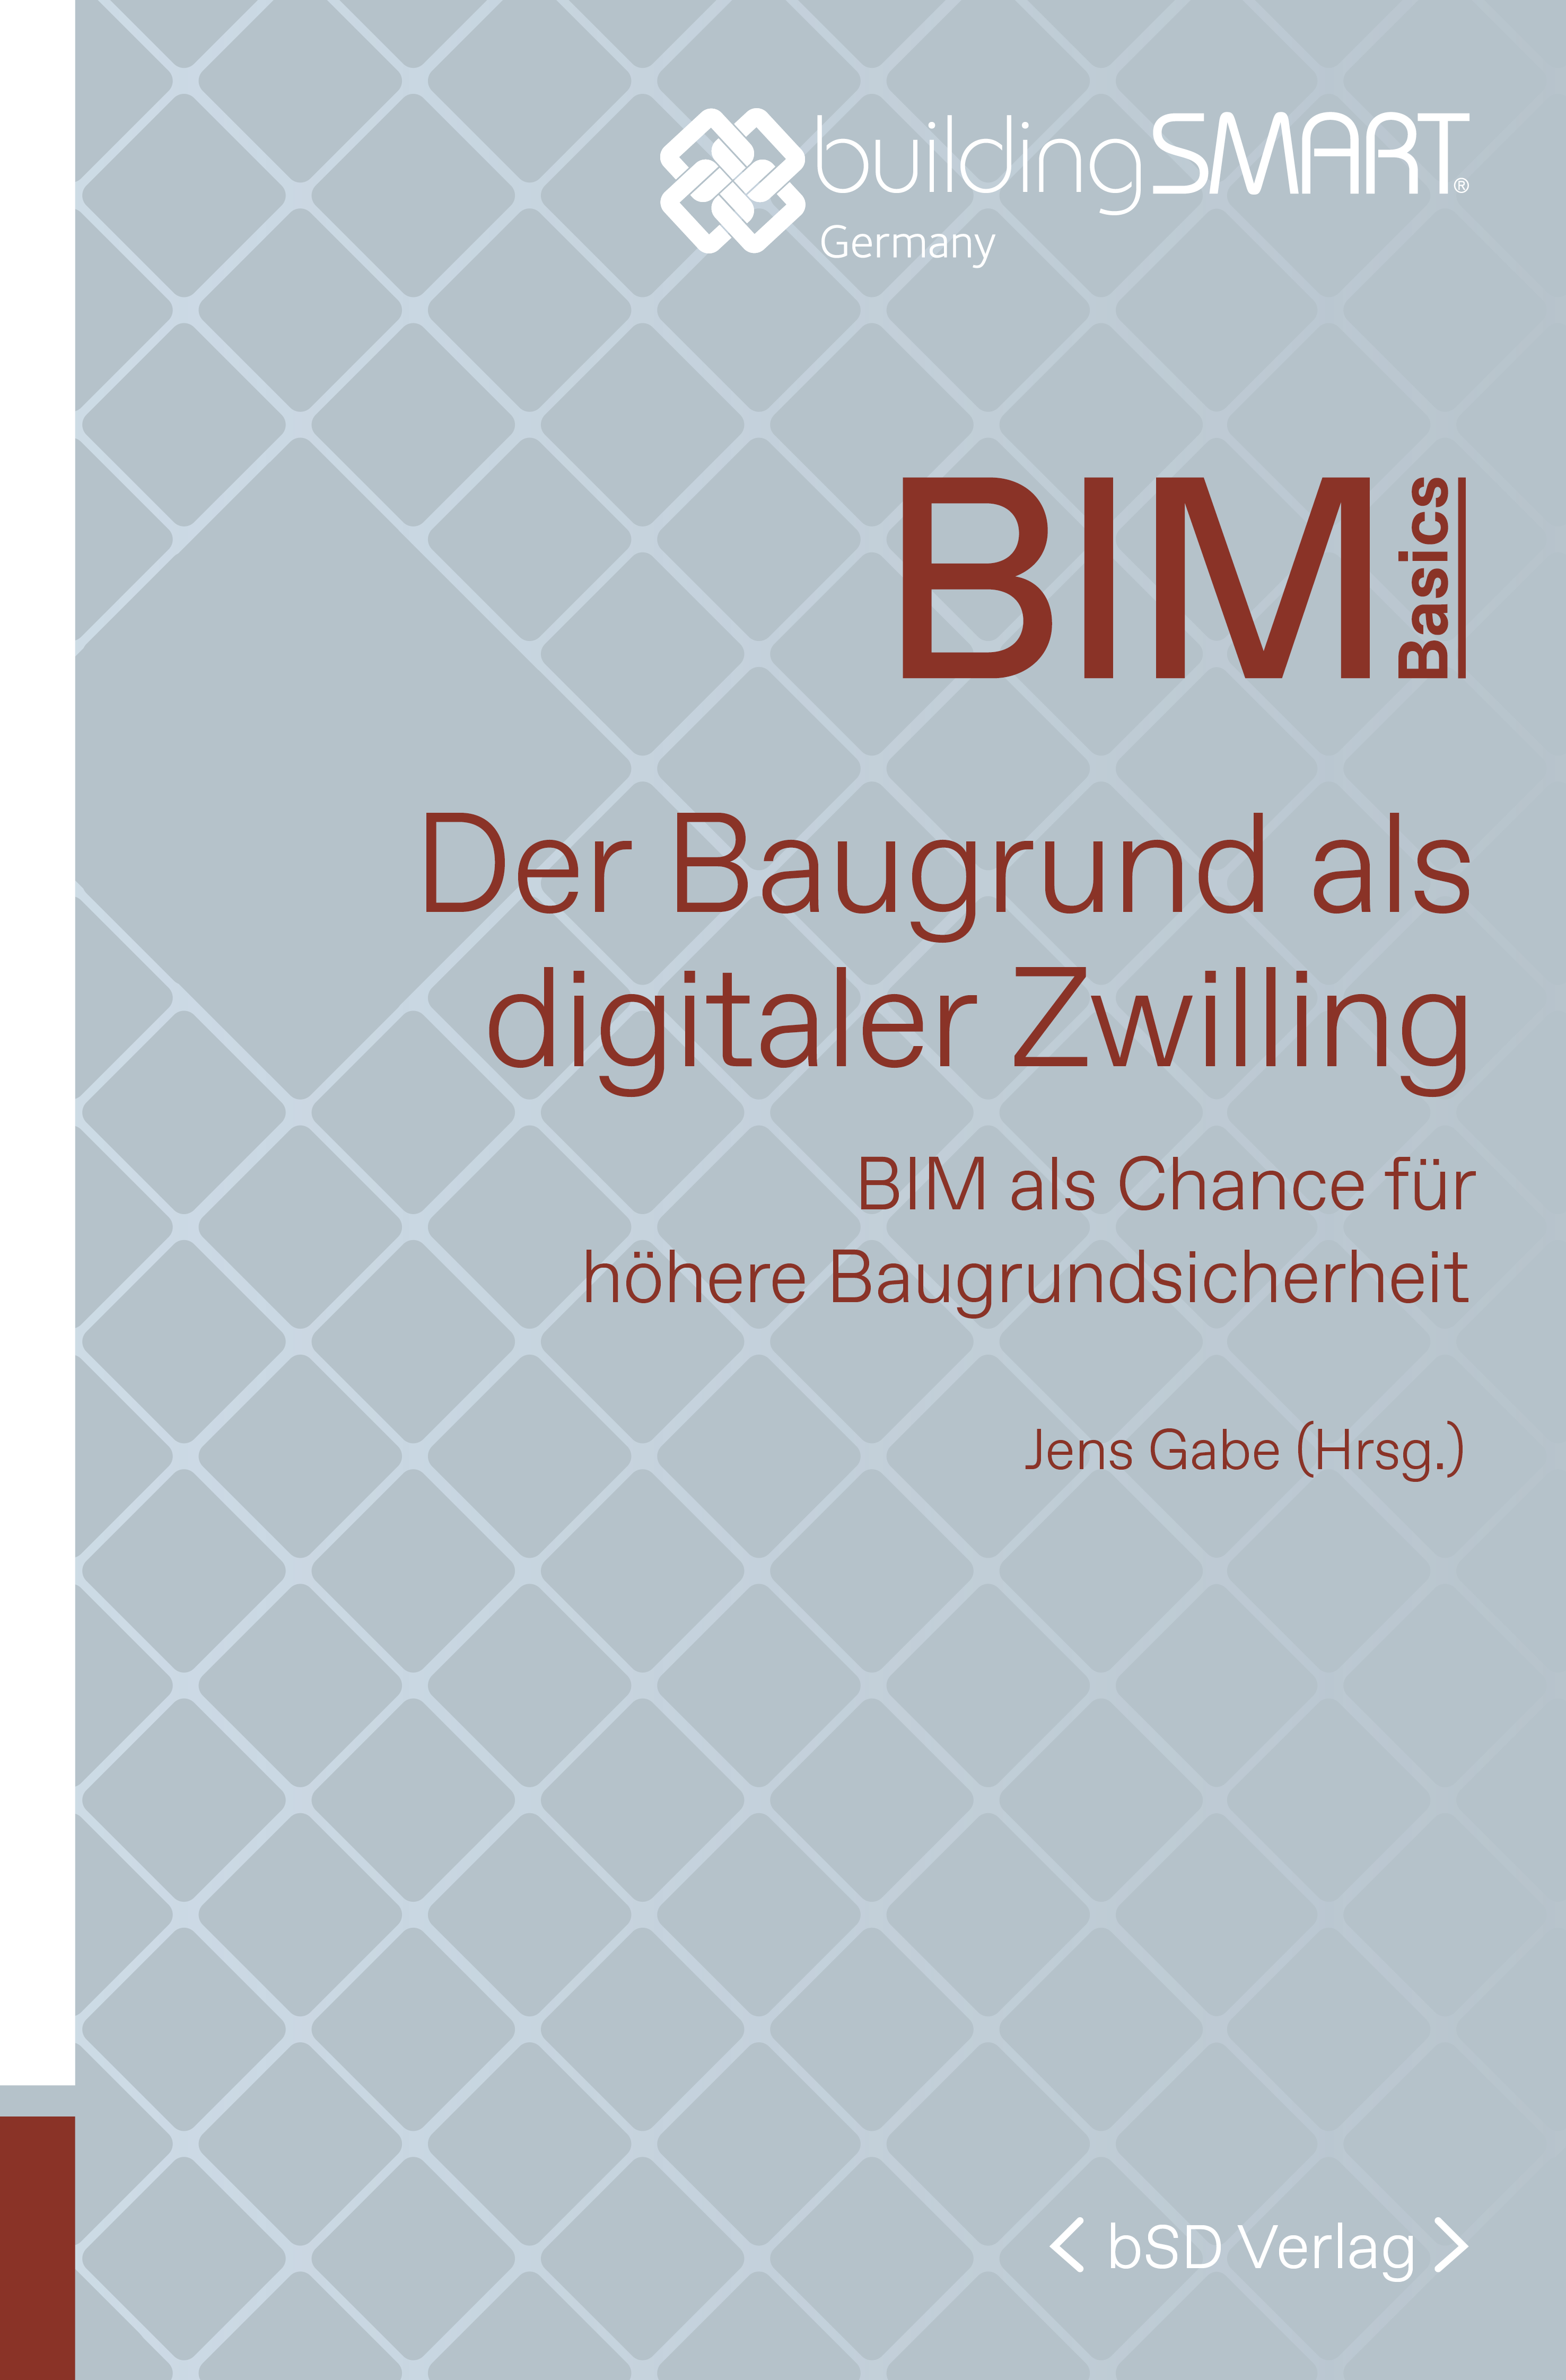 bSD Verlag/BIM Basics: Baugrund als digitaler Zwilling